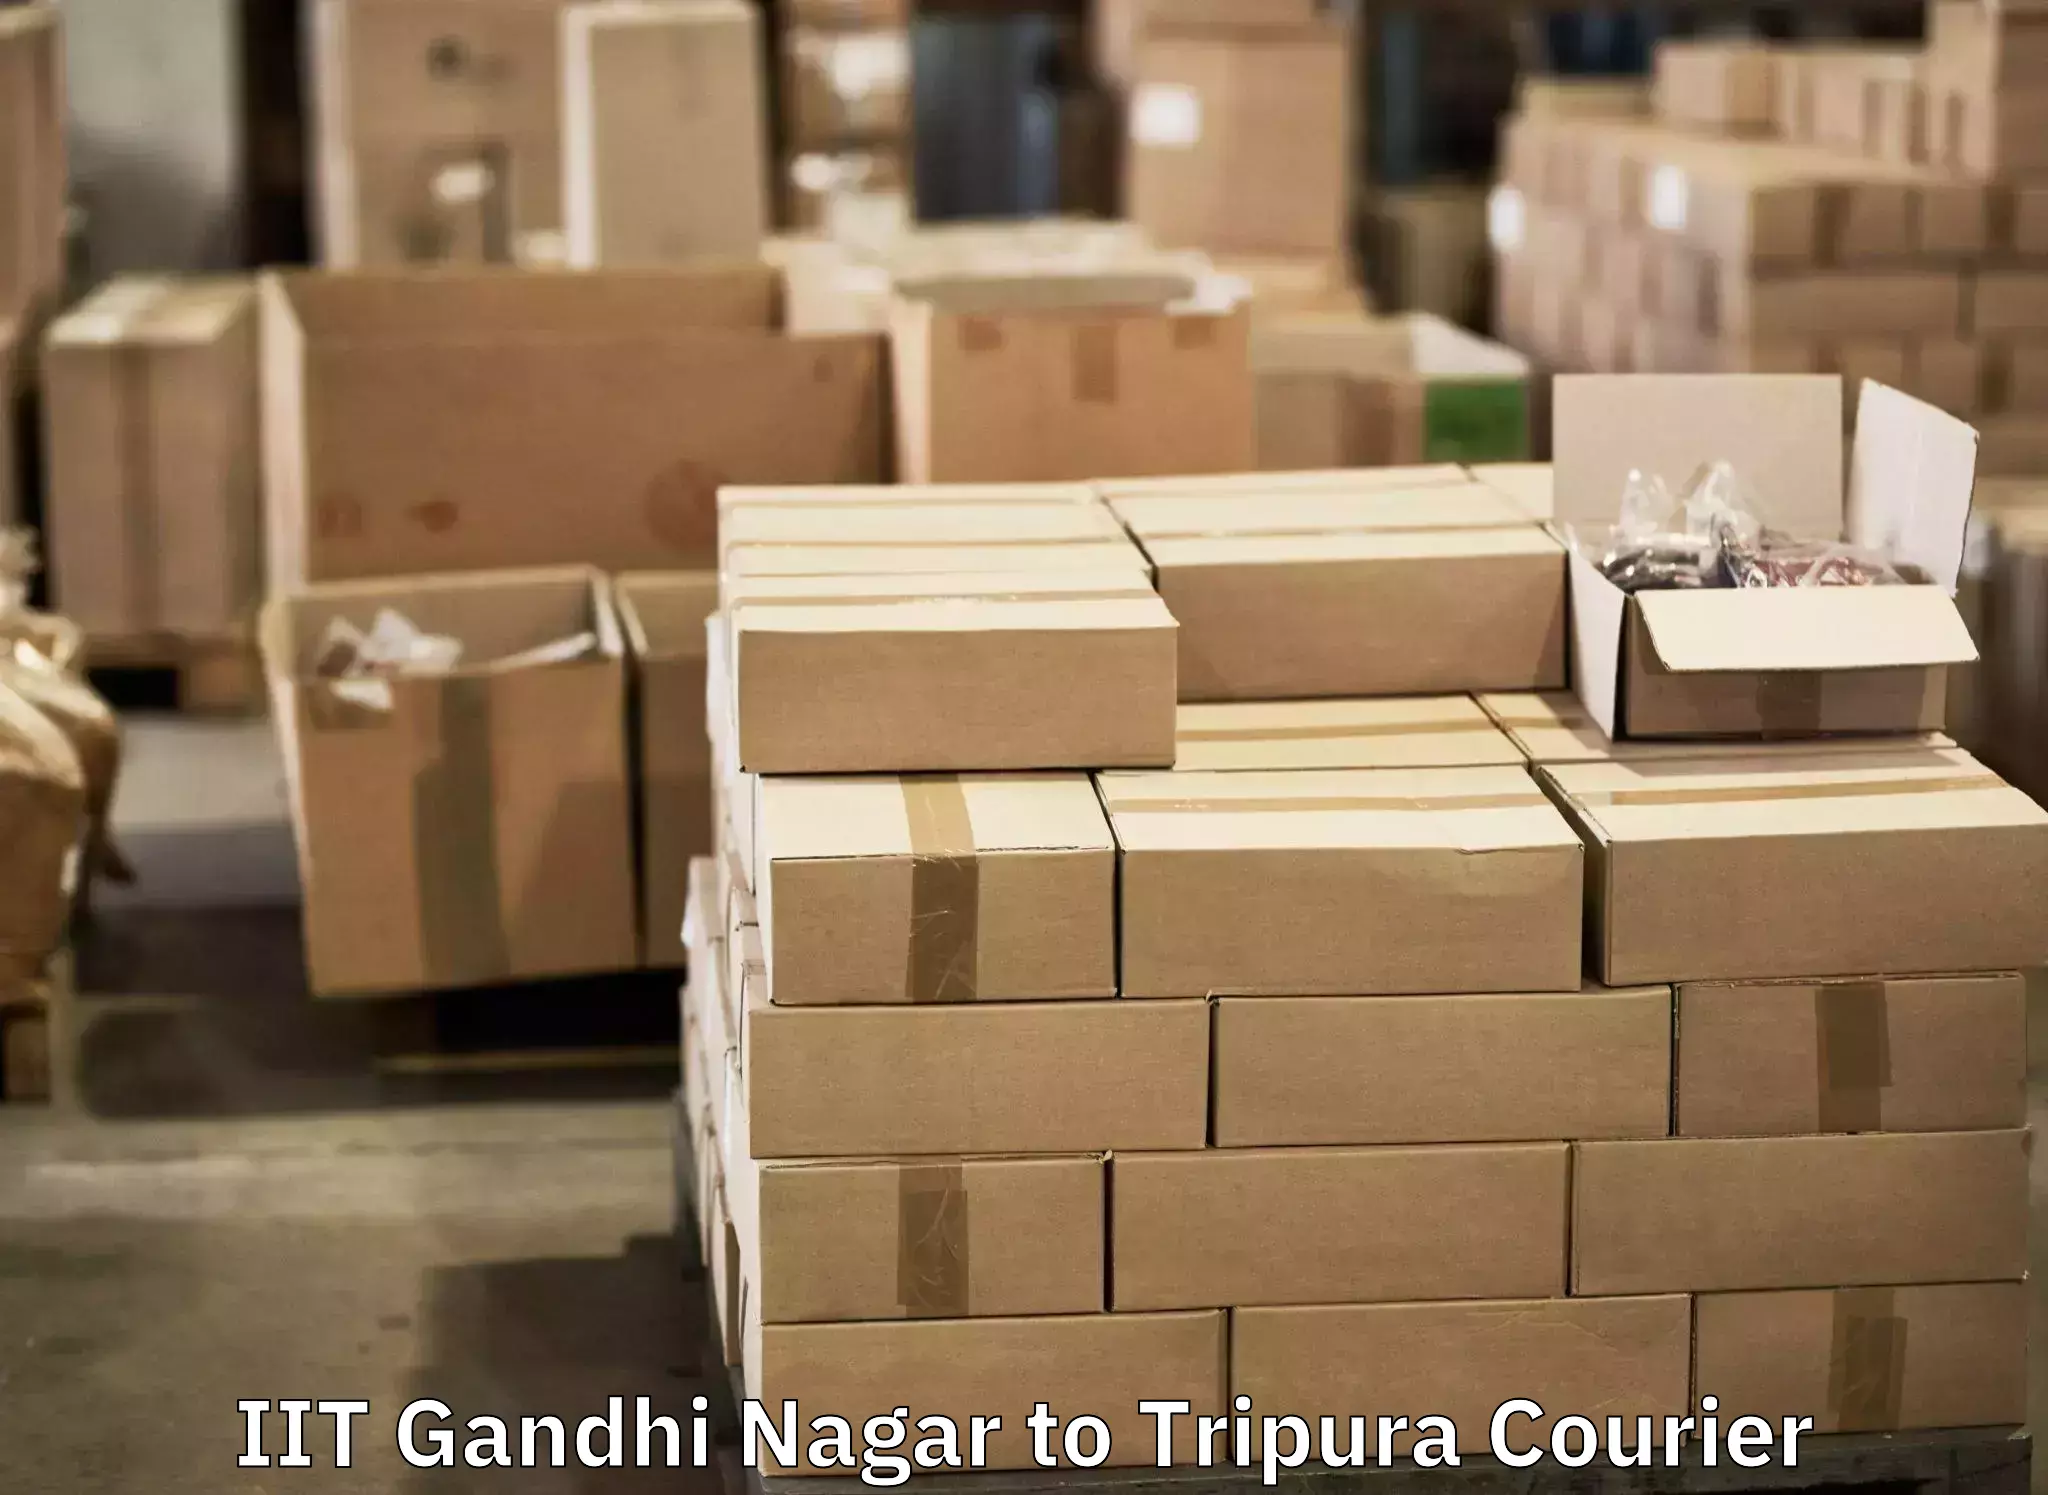 Baggage transport network IIT Gandhi Nagar to Kailashahar